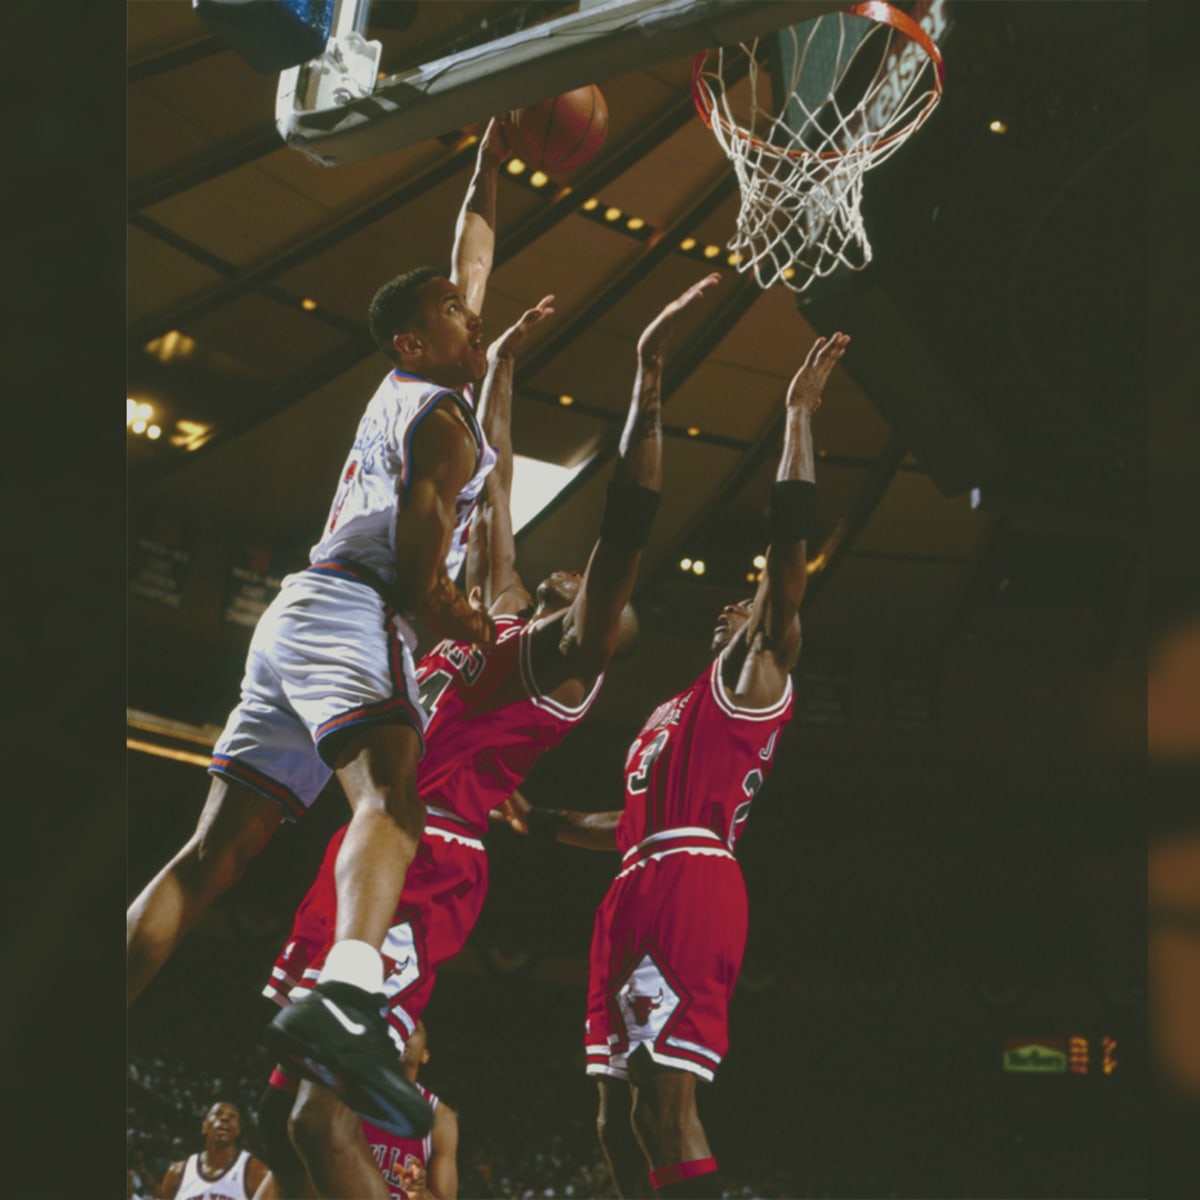 Michael Jordan Chicago Bulls John Starks New York Knicks